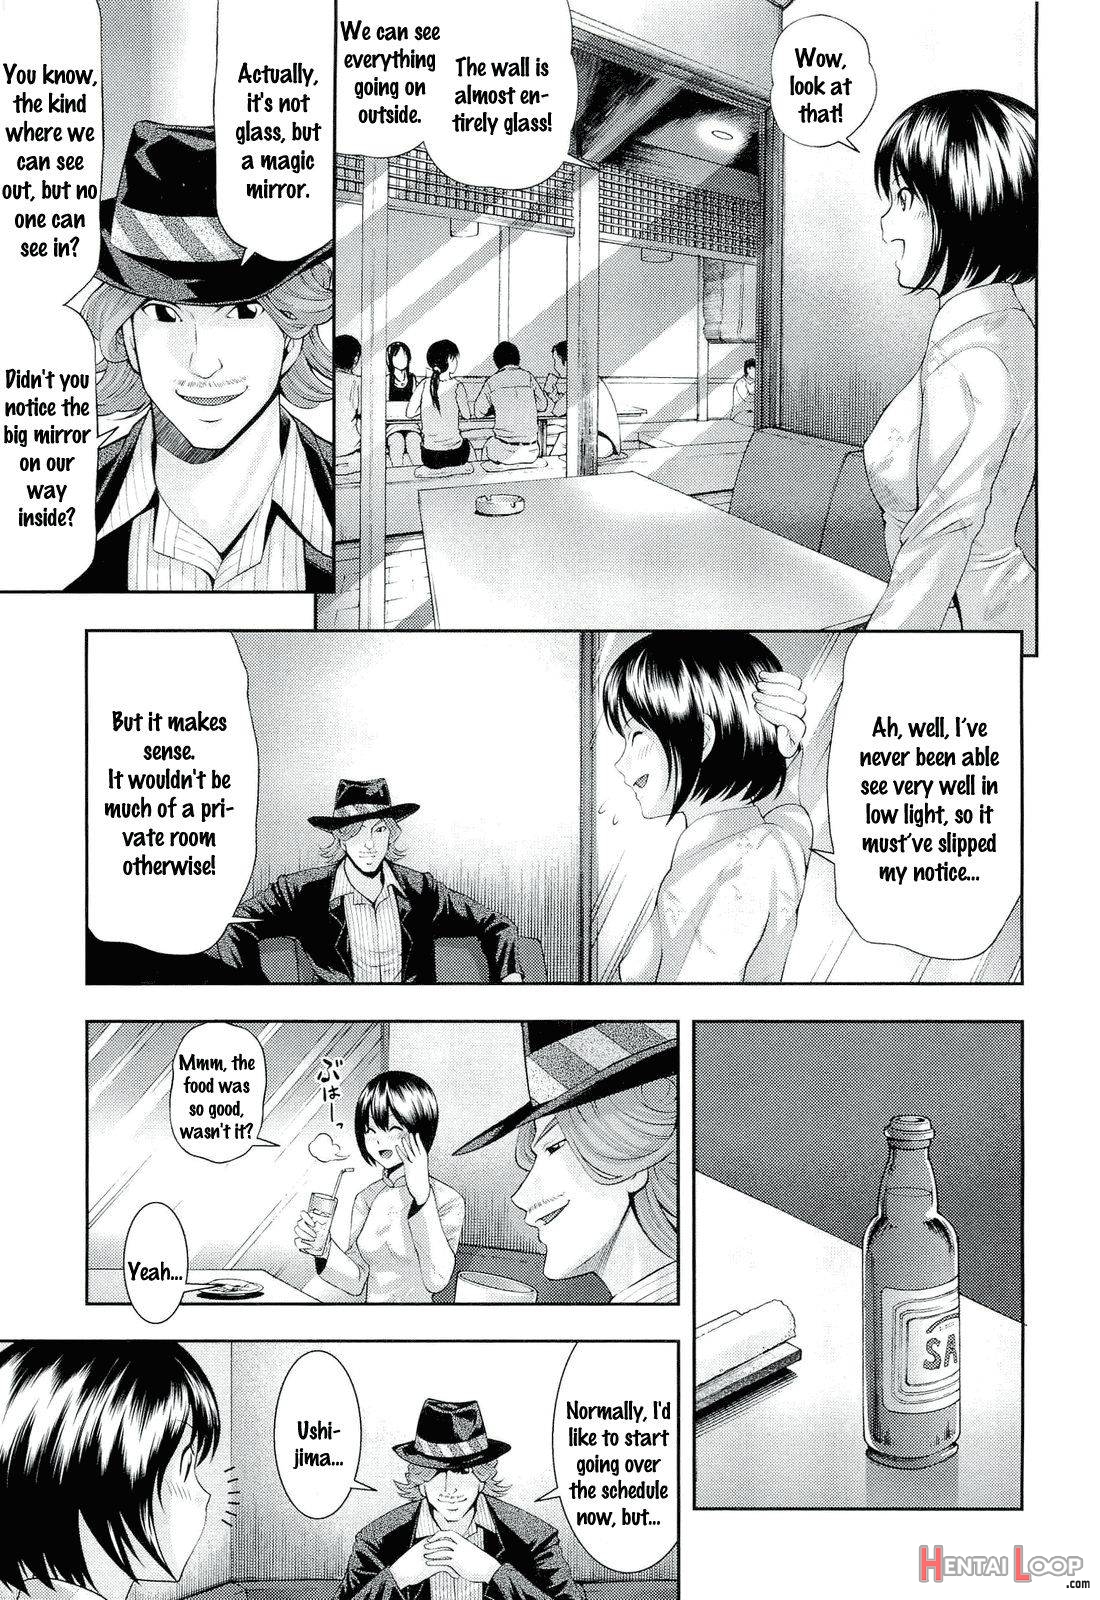 Ushijima Iiniku page 29